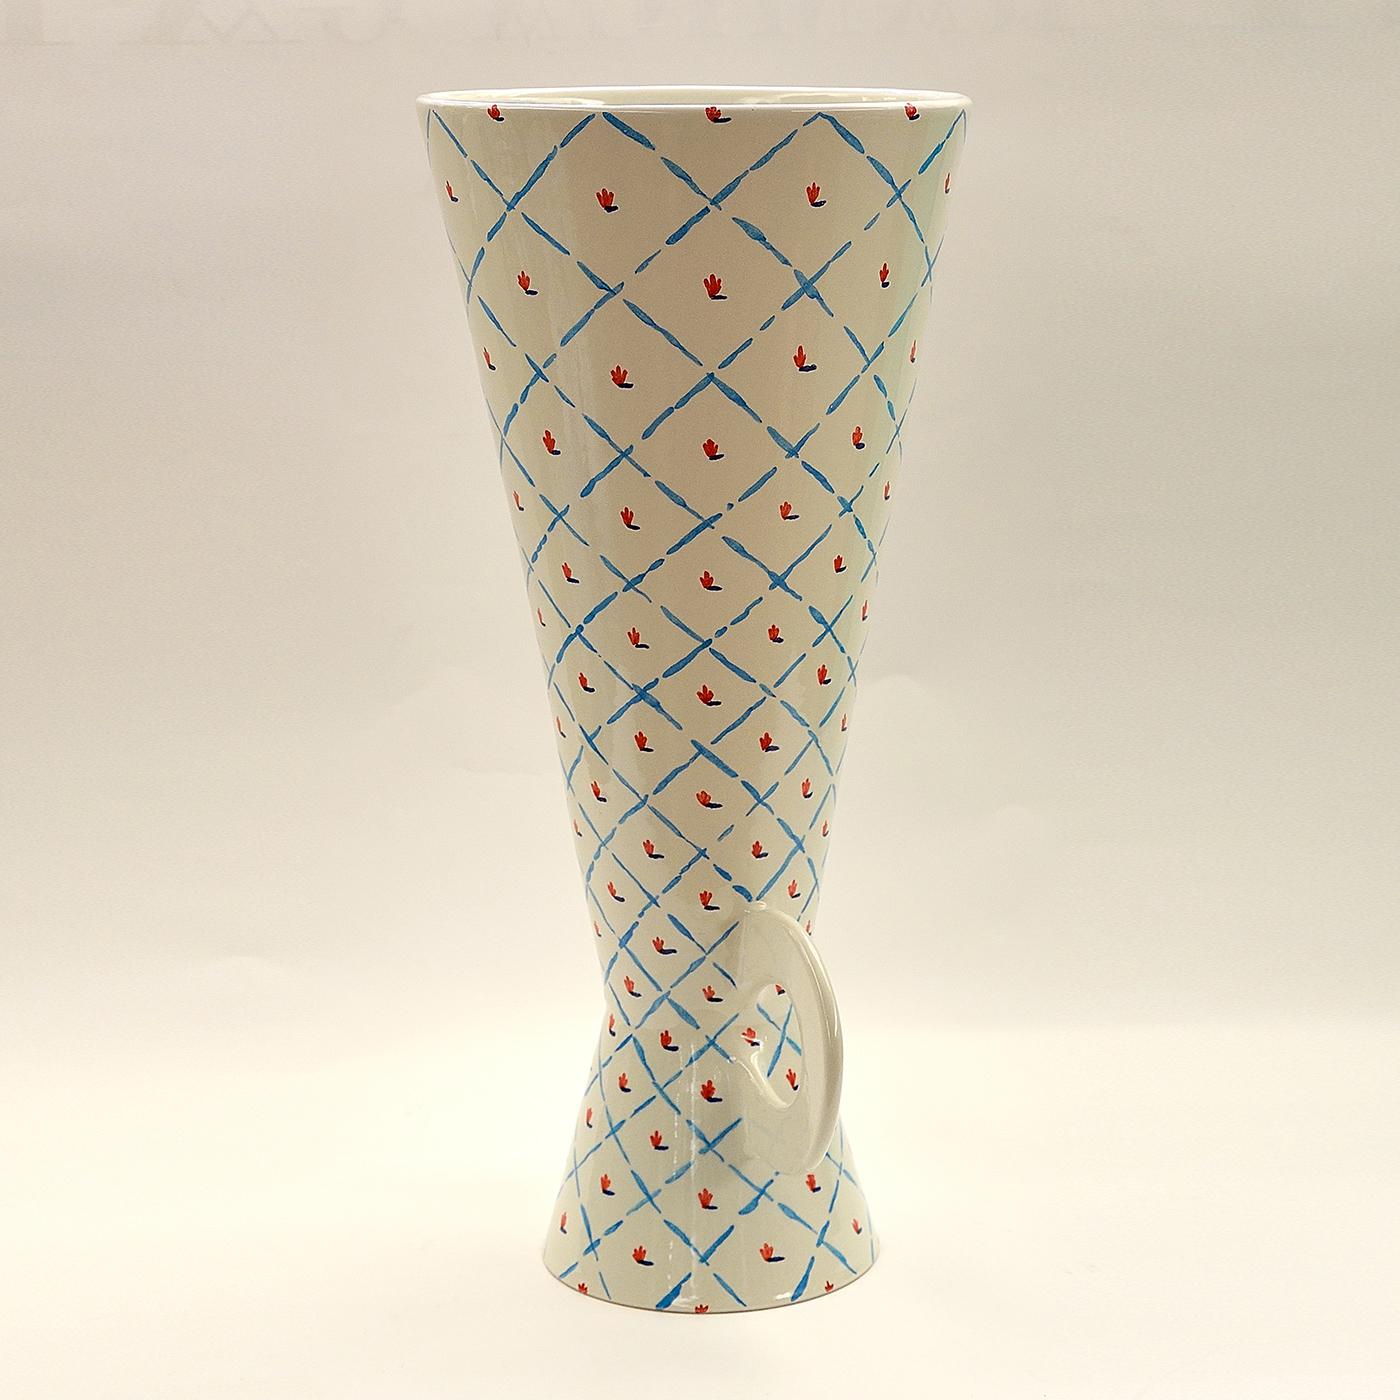 Diese Keramikvase wurde auf einer Drehbank hergestellt und in Steingut emailliert. Die geometrischen Linien und das florale Muster wurden von Hand in Blau und Rot auf einen strahlend weißen Untergrund gemalt. Dieses Stück gehört zu einer limitierten